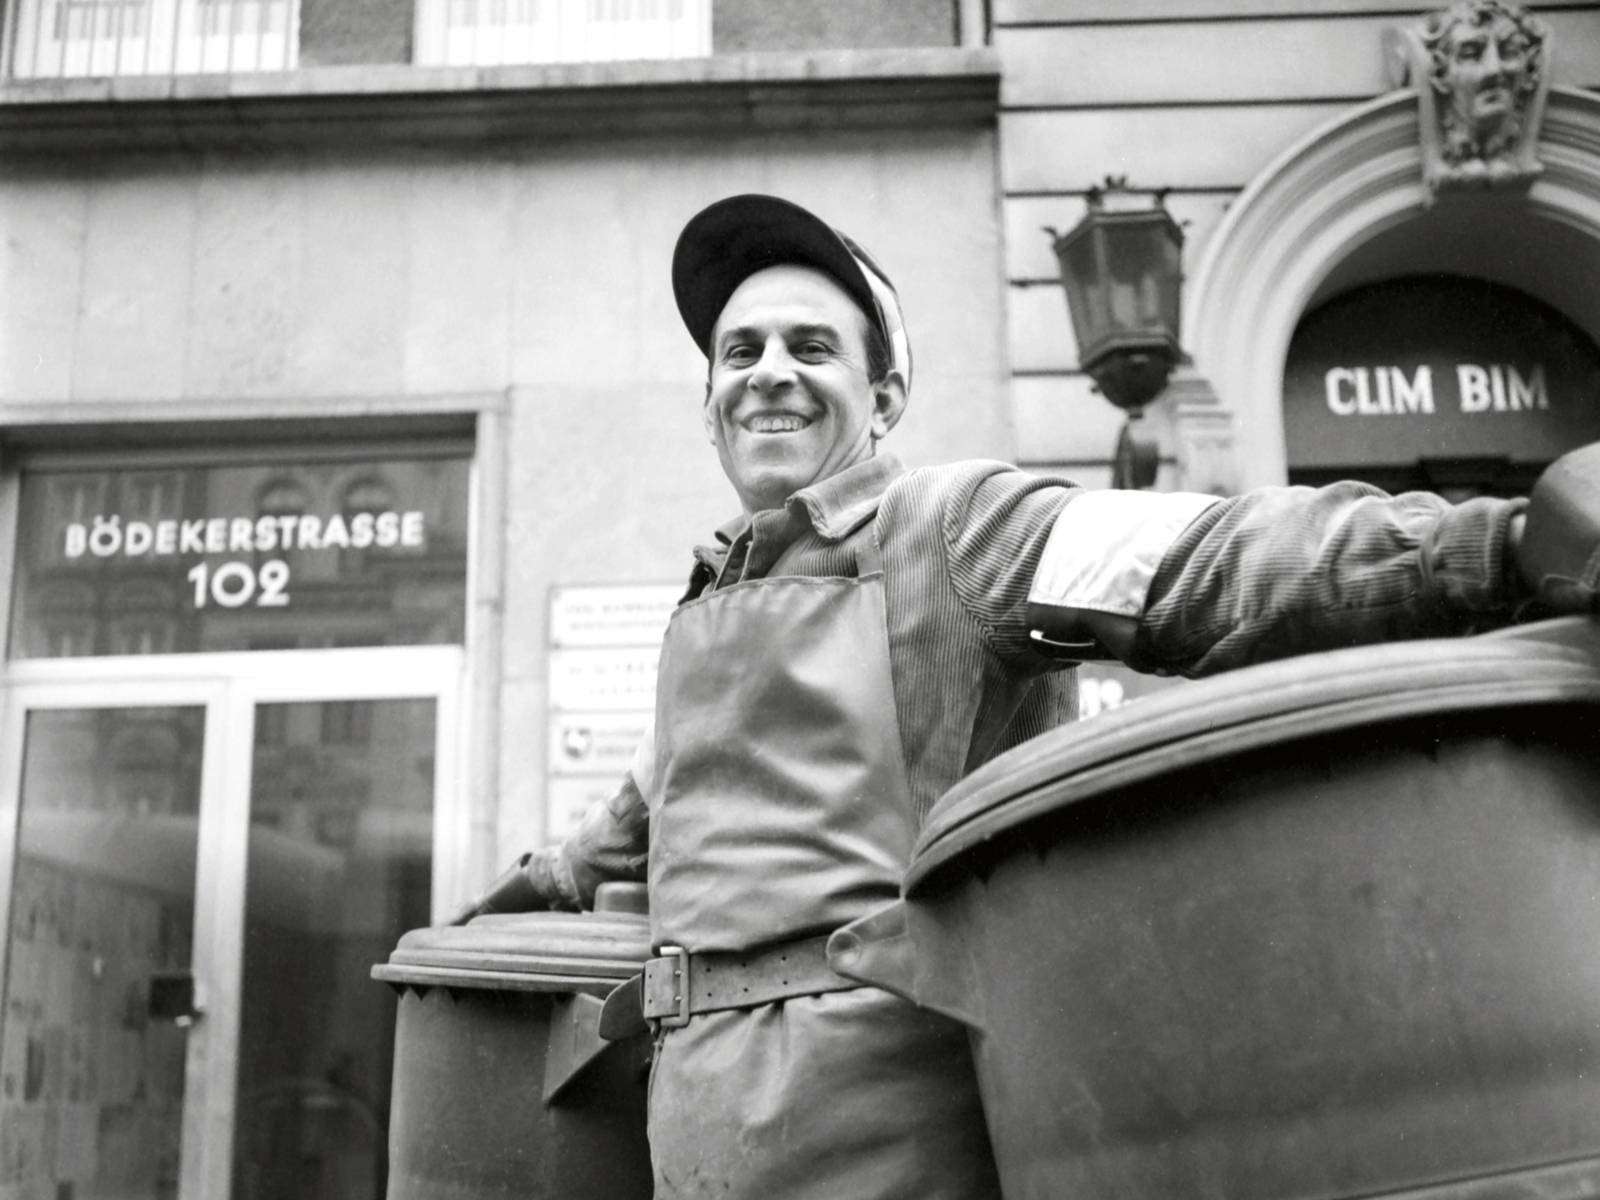 Schwarz-Weiß-Fotografie: Ein Mann trägt eine grobe Schürze, unter jedem Arm hat er eine Mülltonne, die er drehend über die Straße bewegt.